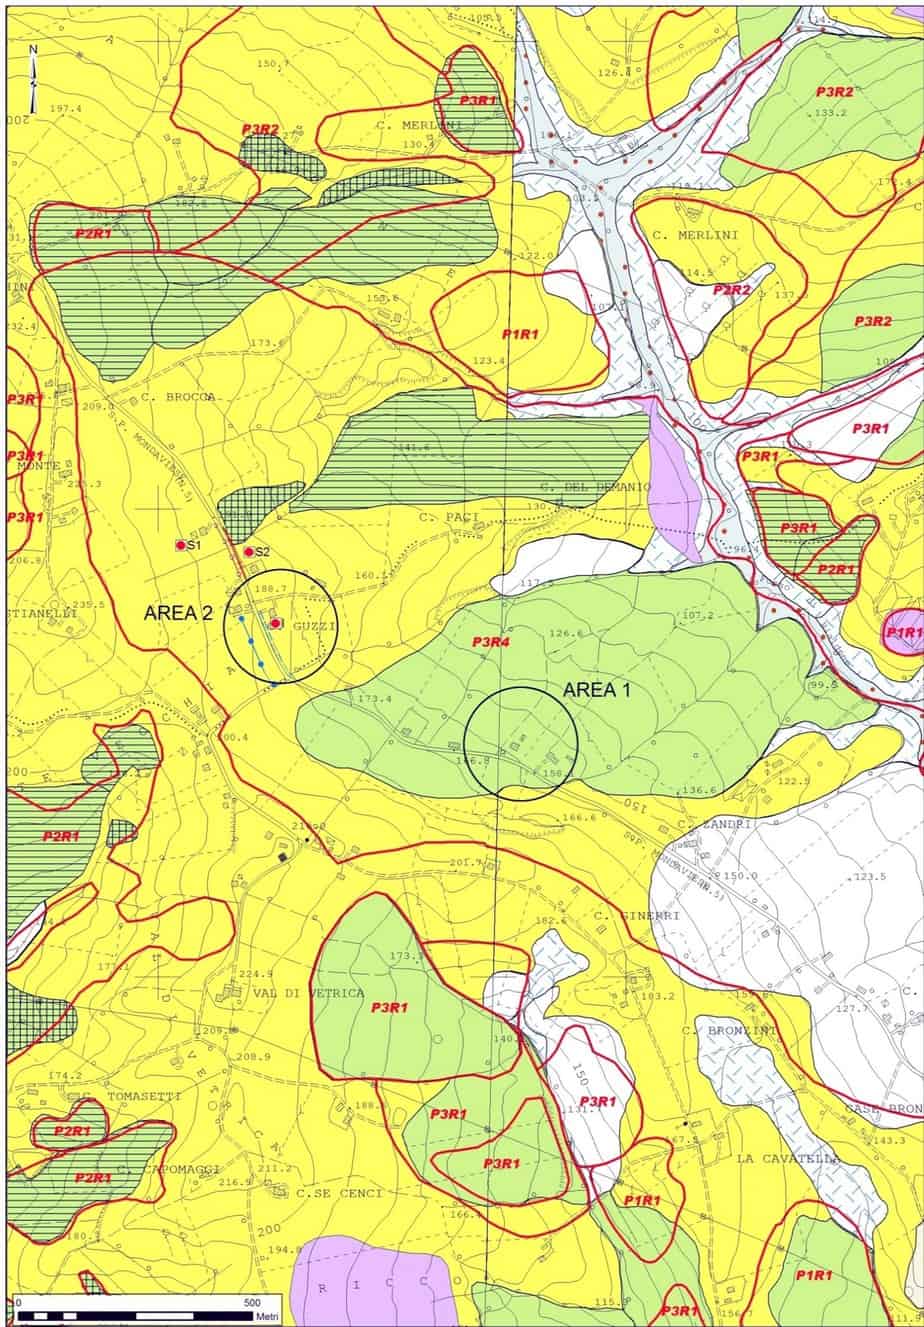 La carta geologico-geomorfologica dell’area di Valdiveltrica e le zone monitorate (Area 1 e 2). In rosso si notano le perimetrazioni del PAI-Marche e in nero i poligoni dei movimenti franosi censiti dall’IFFI-Marche